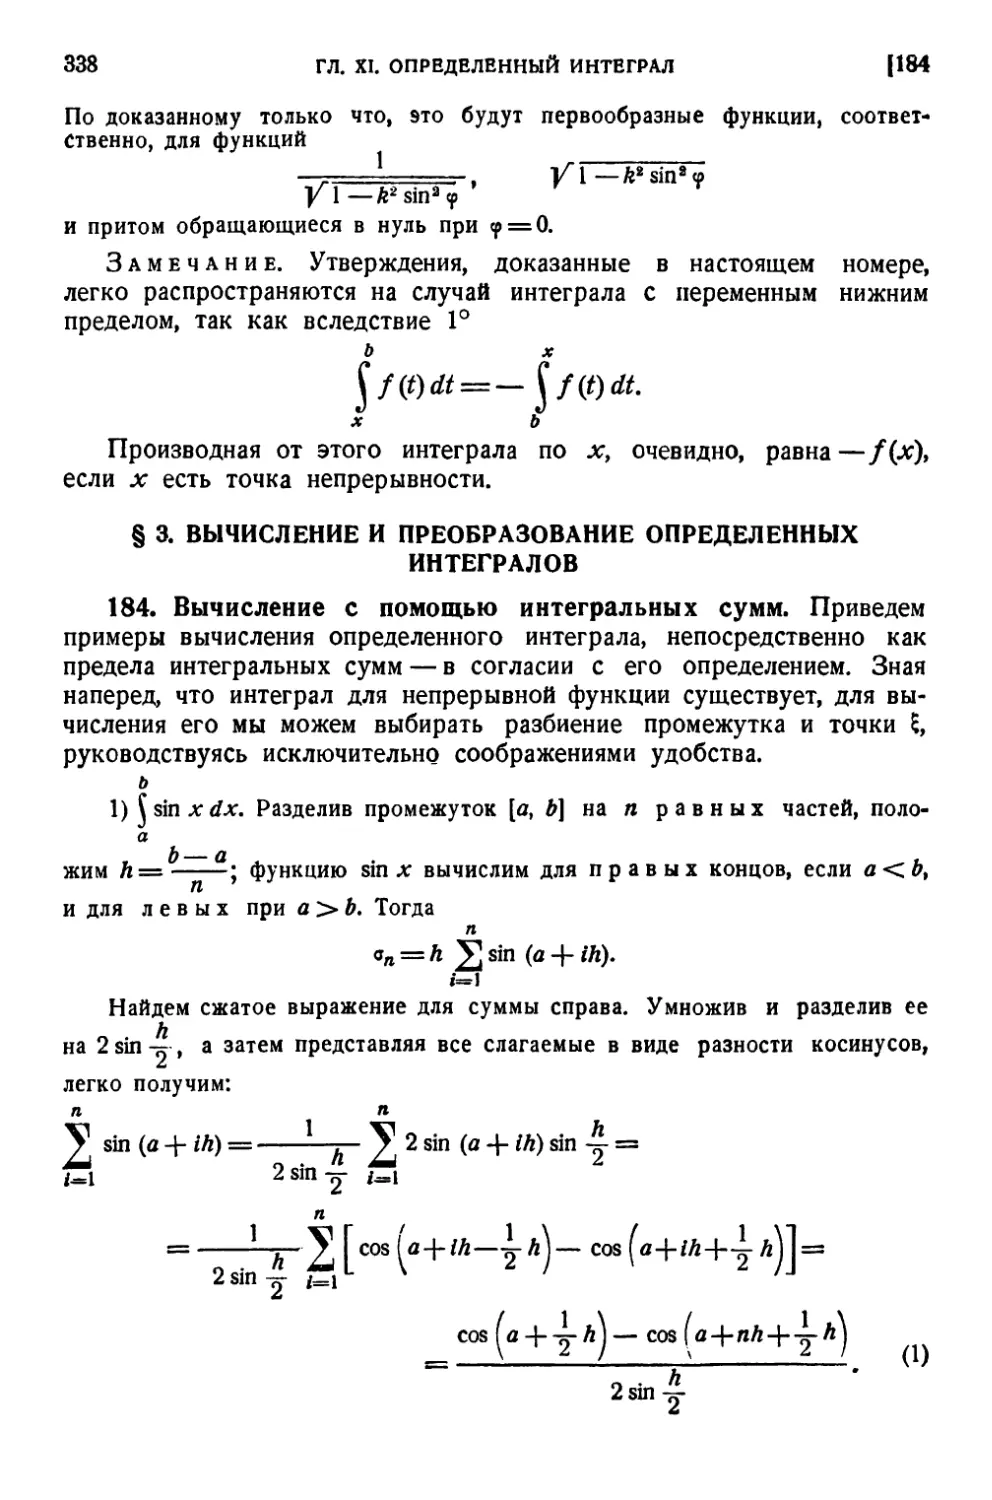 § 3. Вычисление и преобразование определенных интегралов